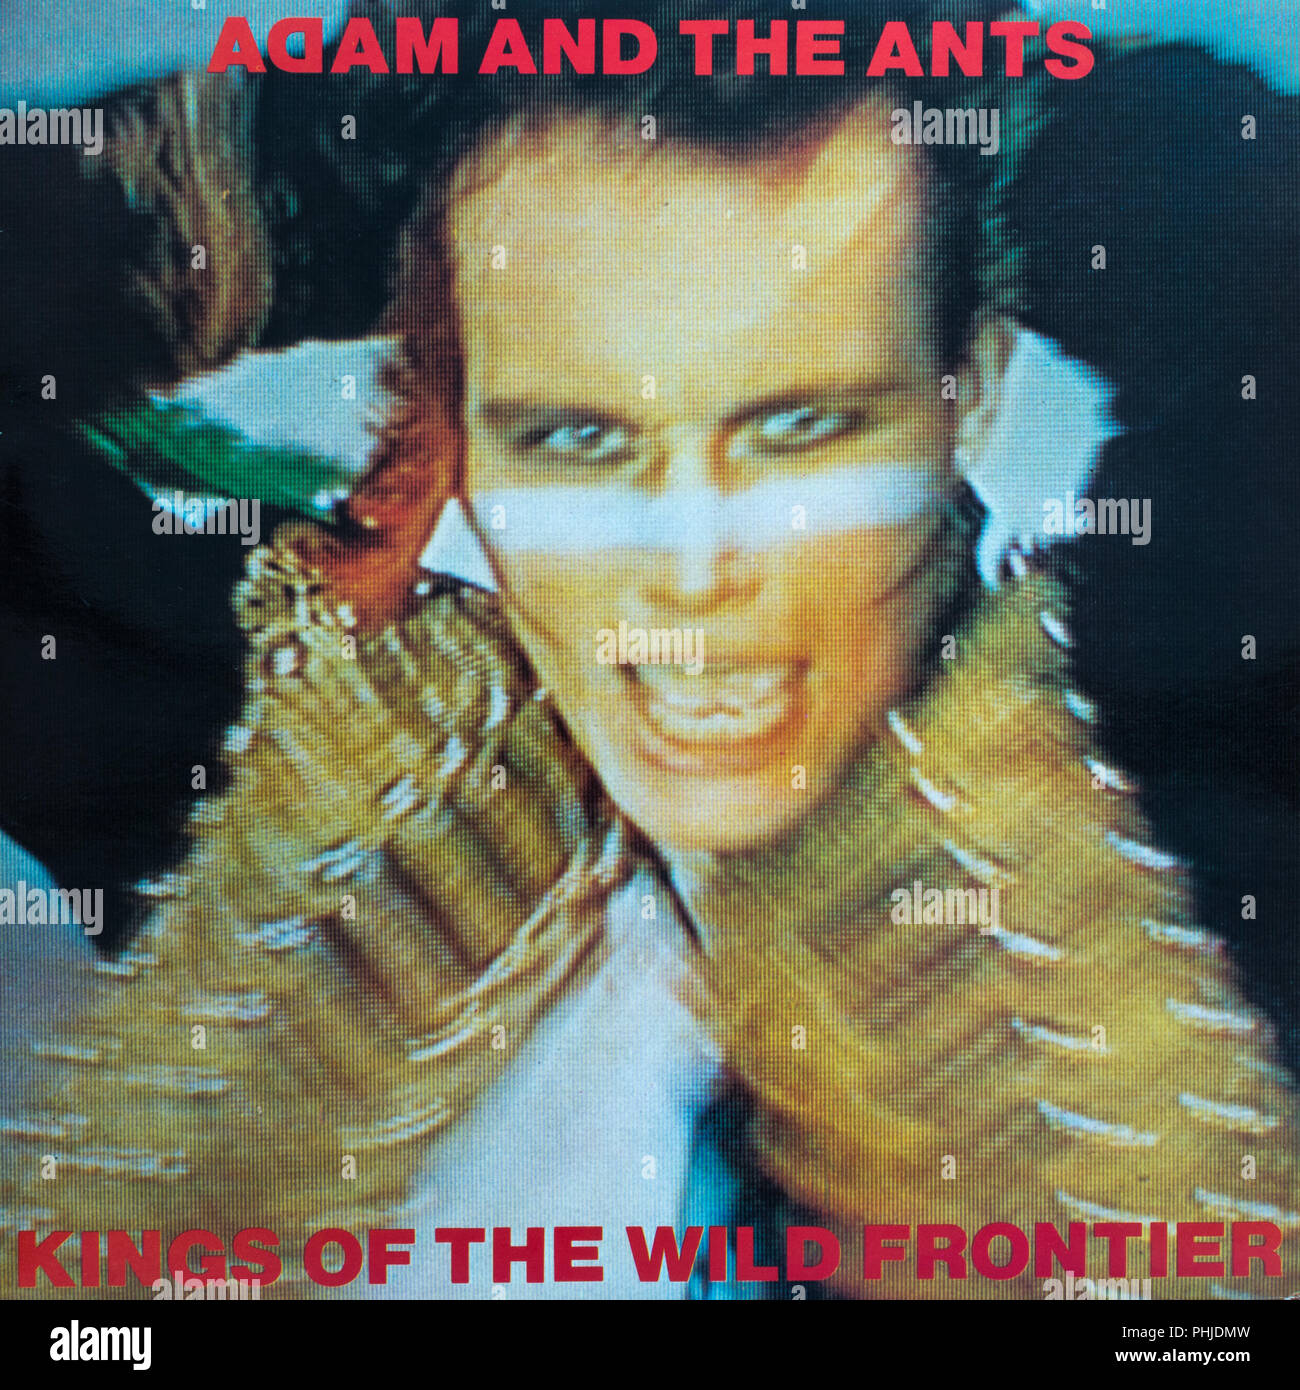 Adam und die Ameisen Könige der Wild Frontier Album Cover Stockfoto